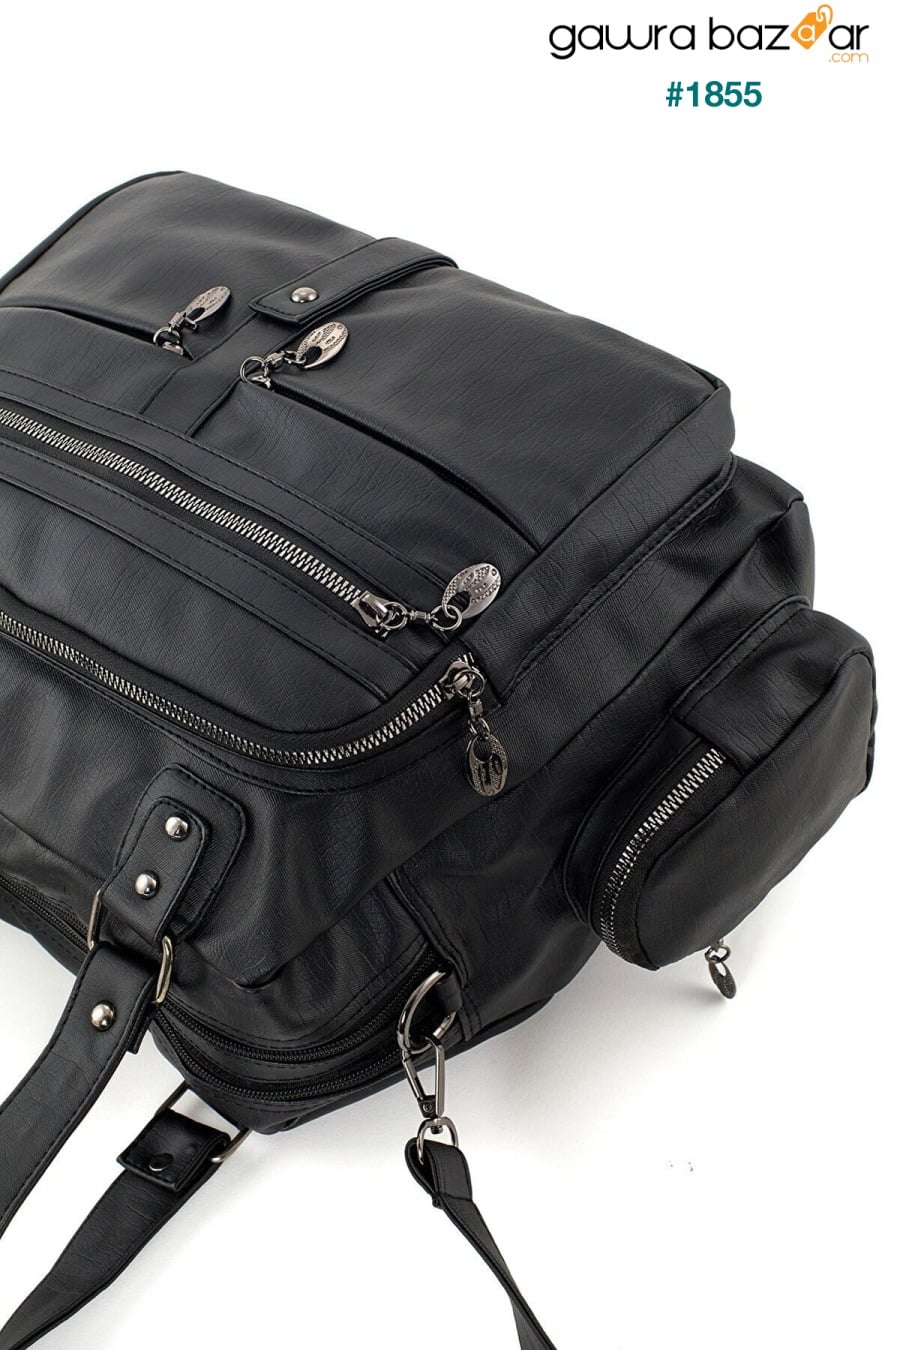 Frappe Bag للسيدات حقيبة كتف متعددة الأقسام من الجلد باللون الأسود - مع جيب مخفي في المقصورة الرئيسية Smurne 2